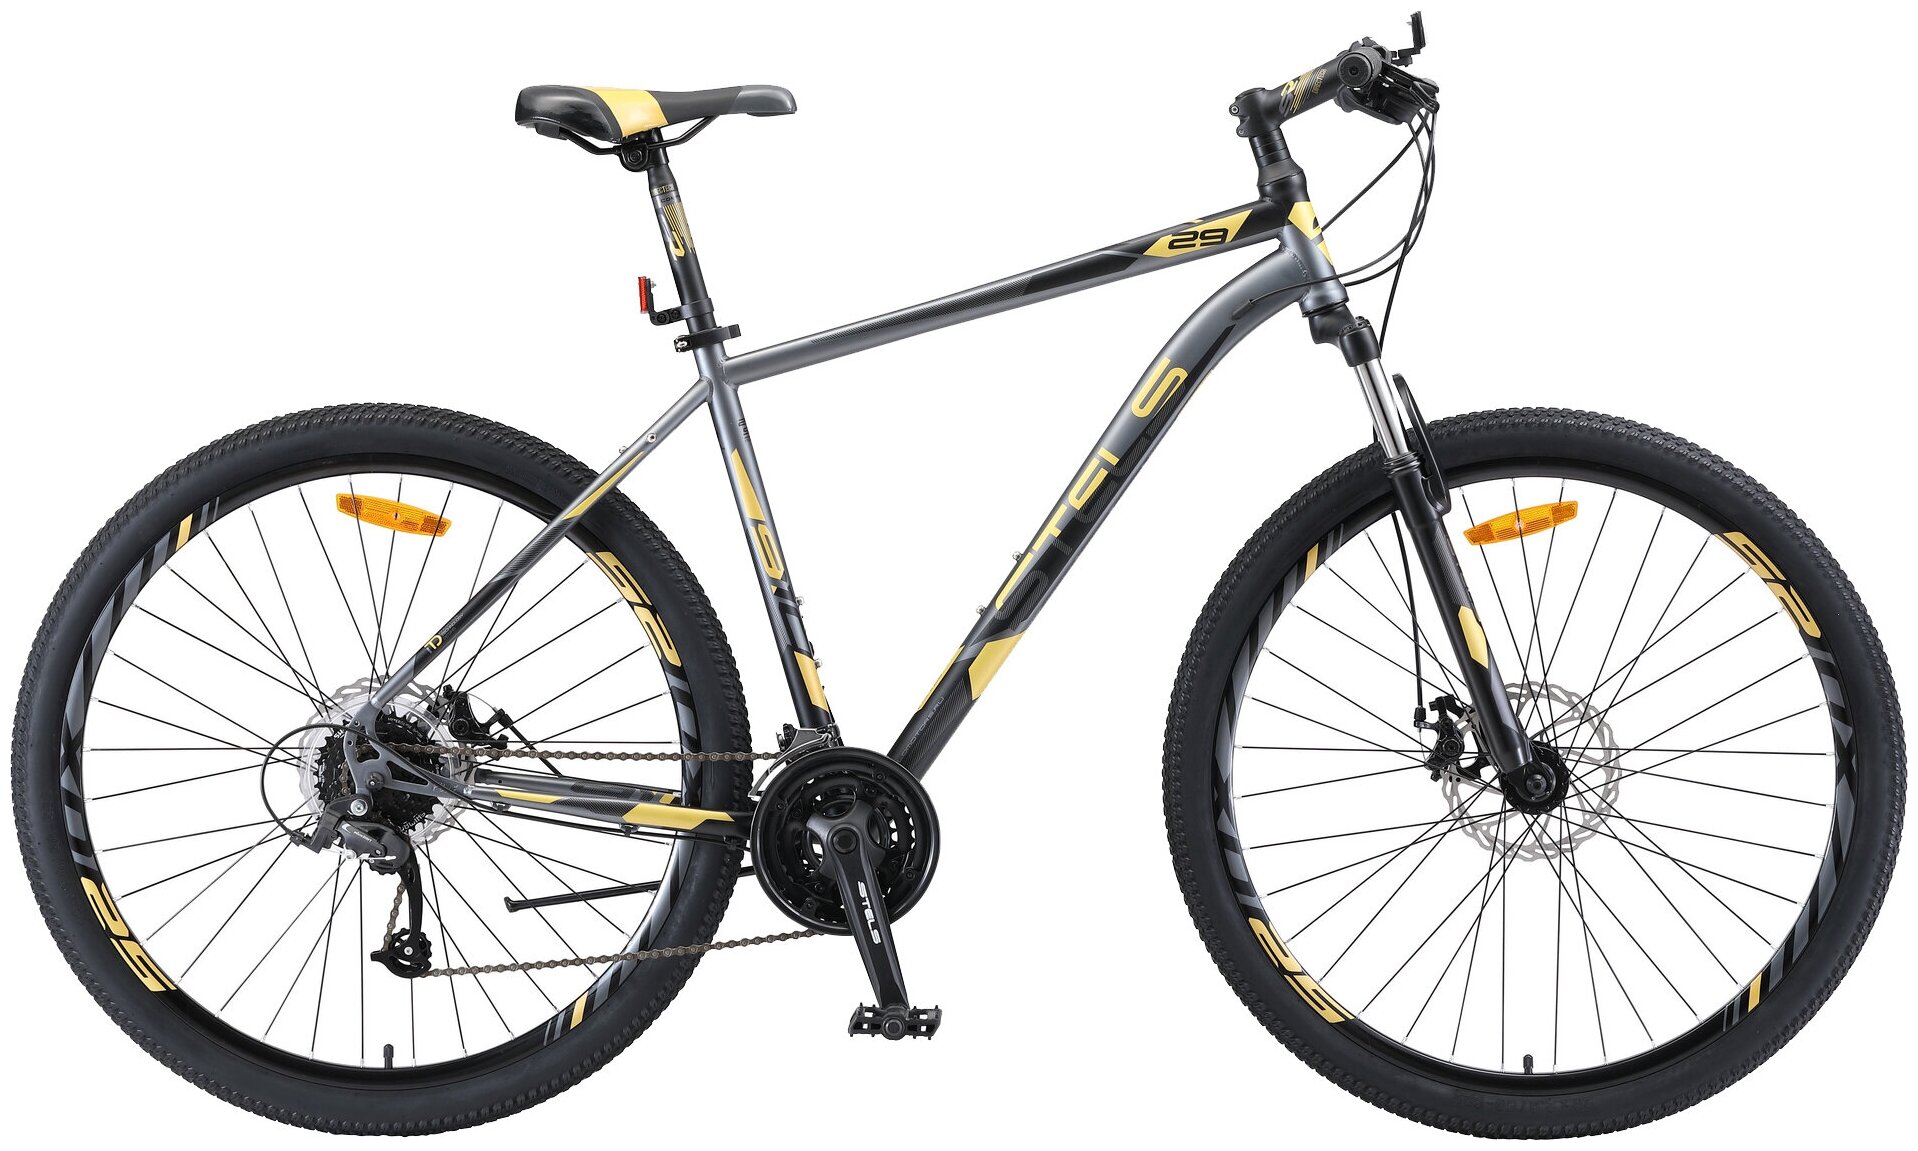 Горный (MTB) велосипед STELS Navigator 910 MD 29 V010 (2019) черный/золотой 18.5" (требует финальной сборки)